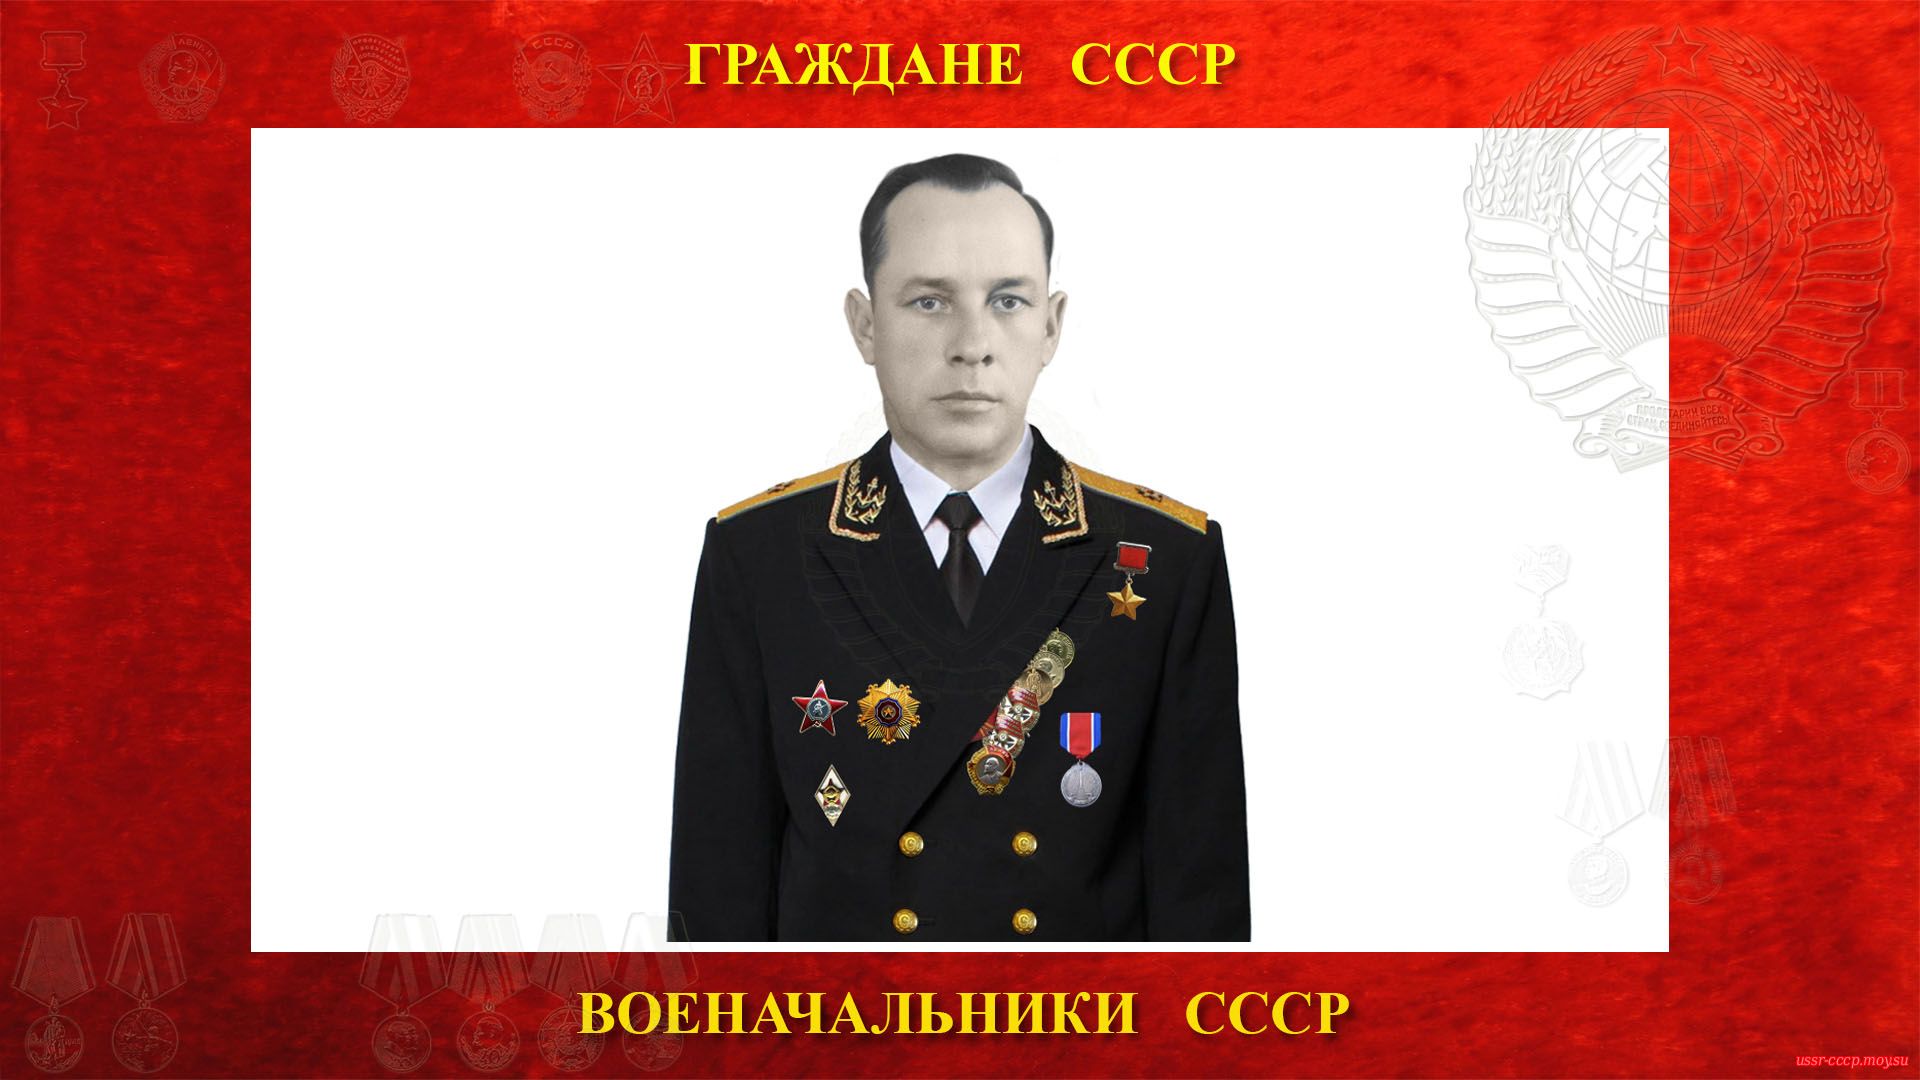 Балякин Леонид Николаевич — Советский военачальник СССР — Контр-адмирал (19.08.1915 — 26.02.1981 (биография))